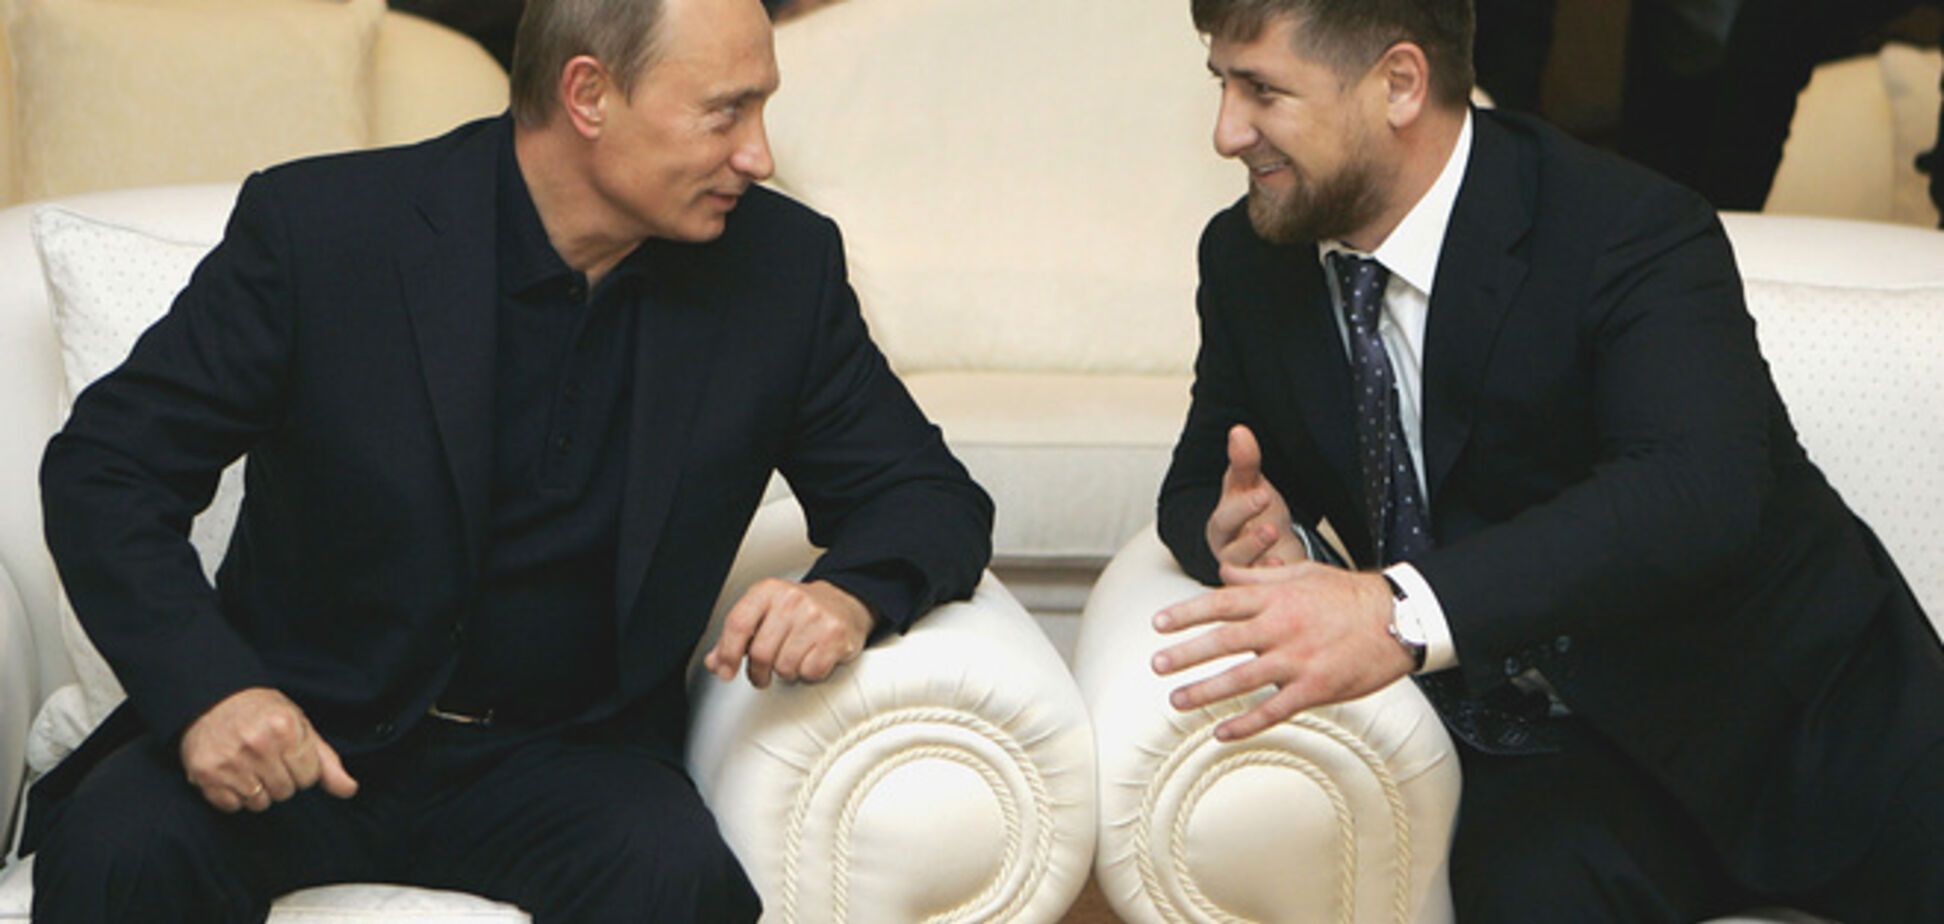 Вседозволенность Кадырова плохо закончится, и для Путина тоже - Немцов 